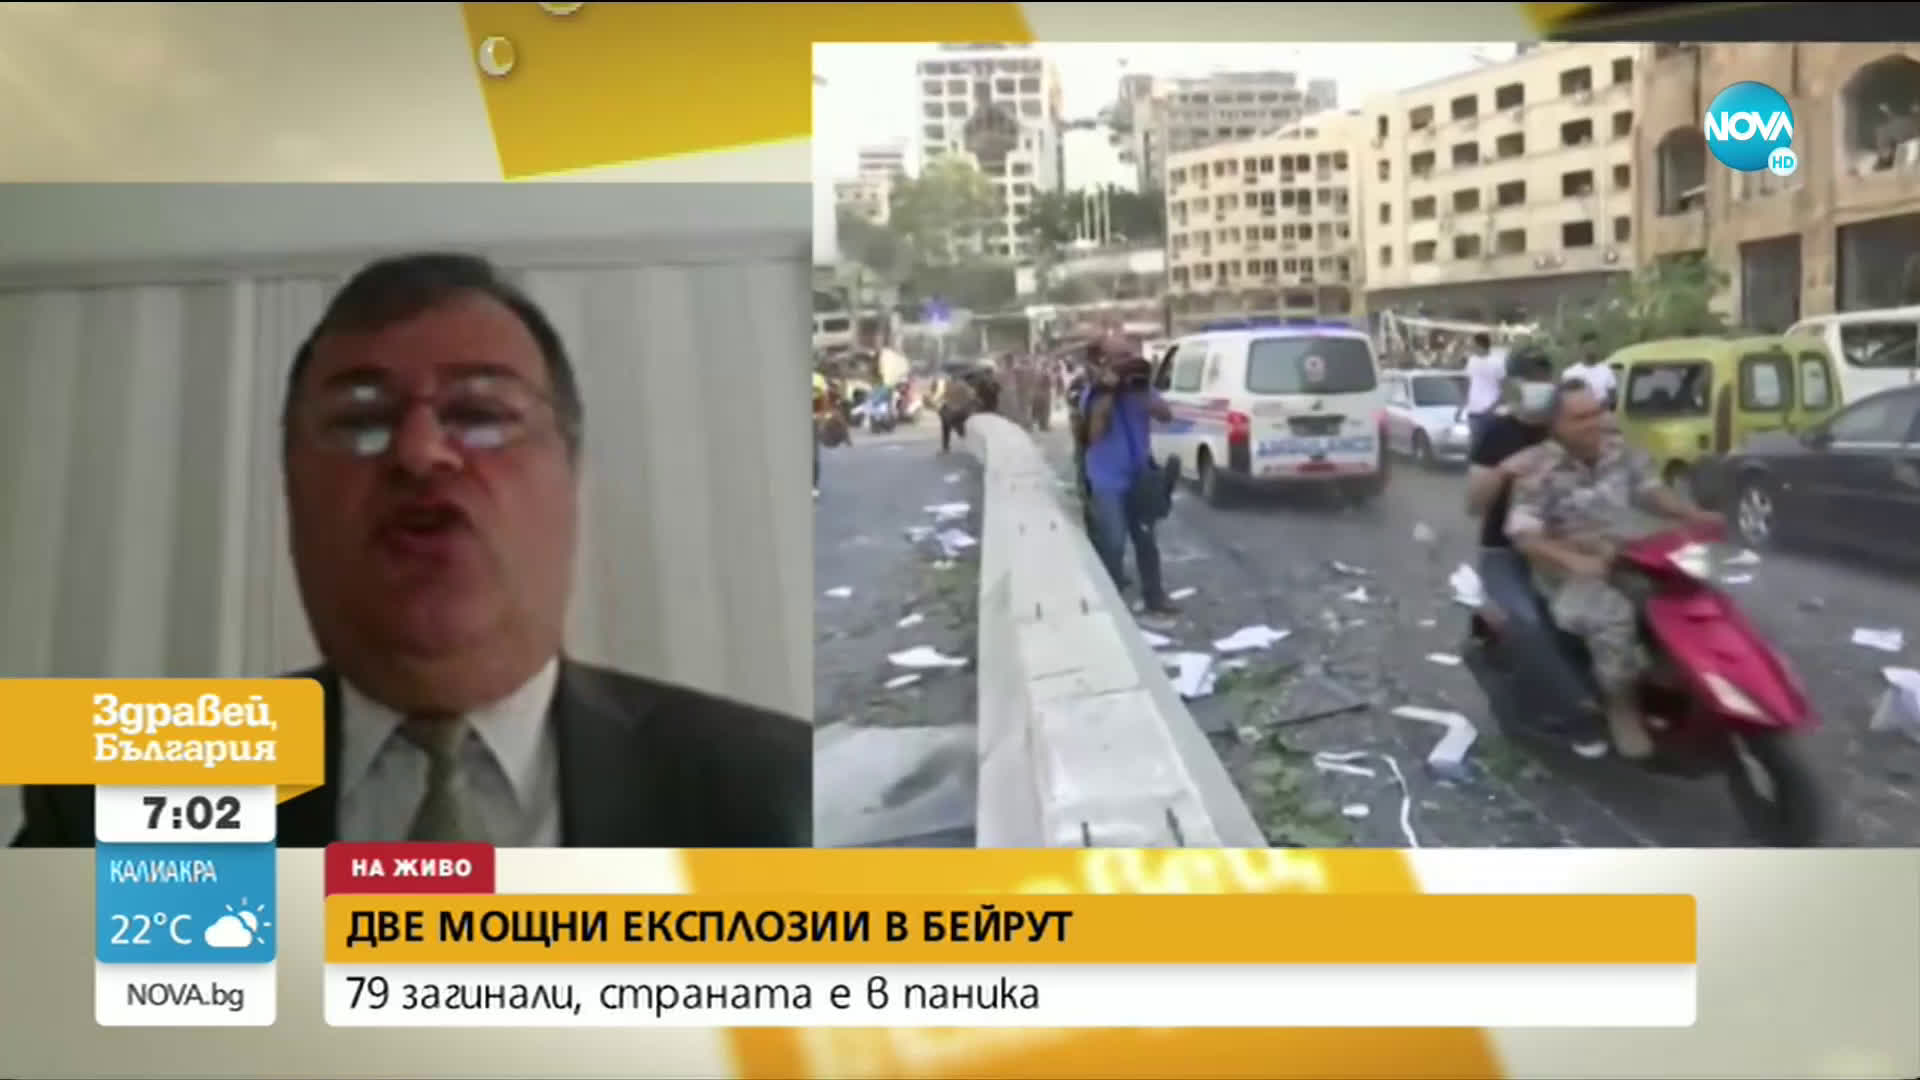 Посланикът на България в Бейрут: Смята се, че са гръмнали цистерни с амониев нитрат